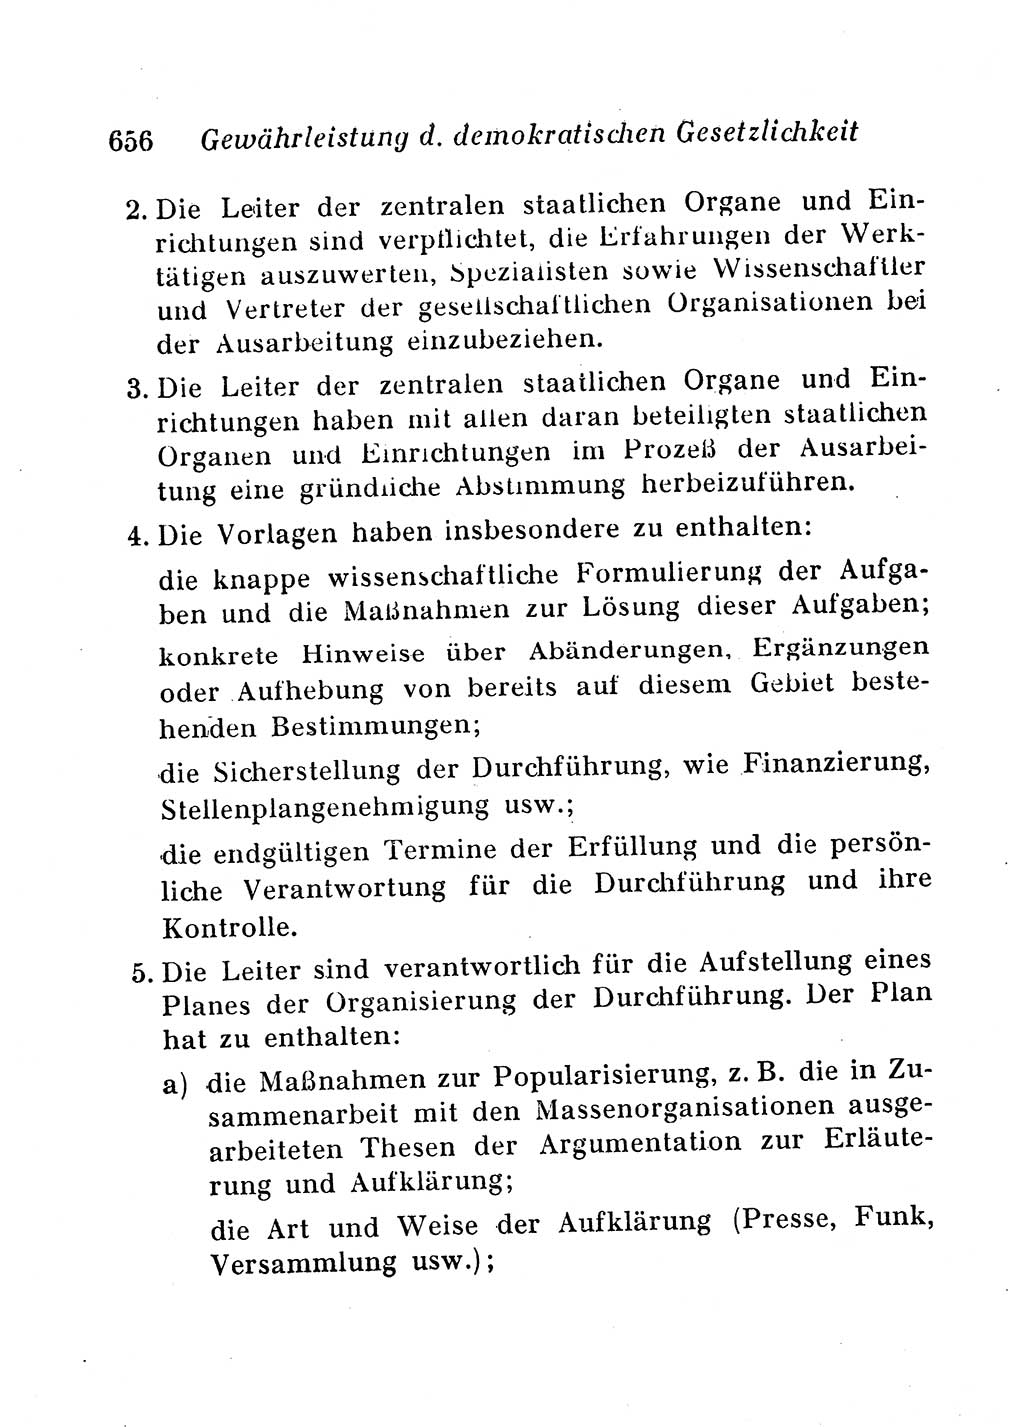 Staats- und verwaltungsrechtliche Gesetze der Deutschen Demokratischen Republik (DDR) 1958, Seite 656 (StVerwR Ges. DDR 1958, S. 656)